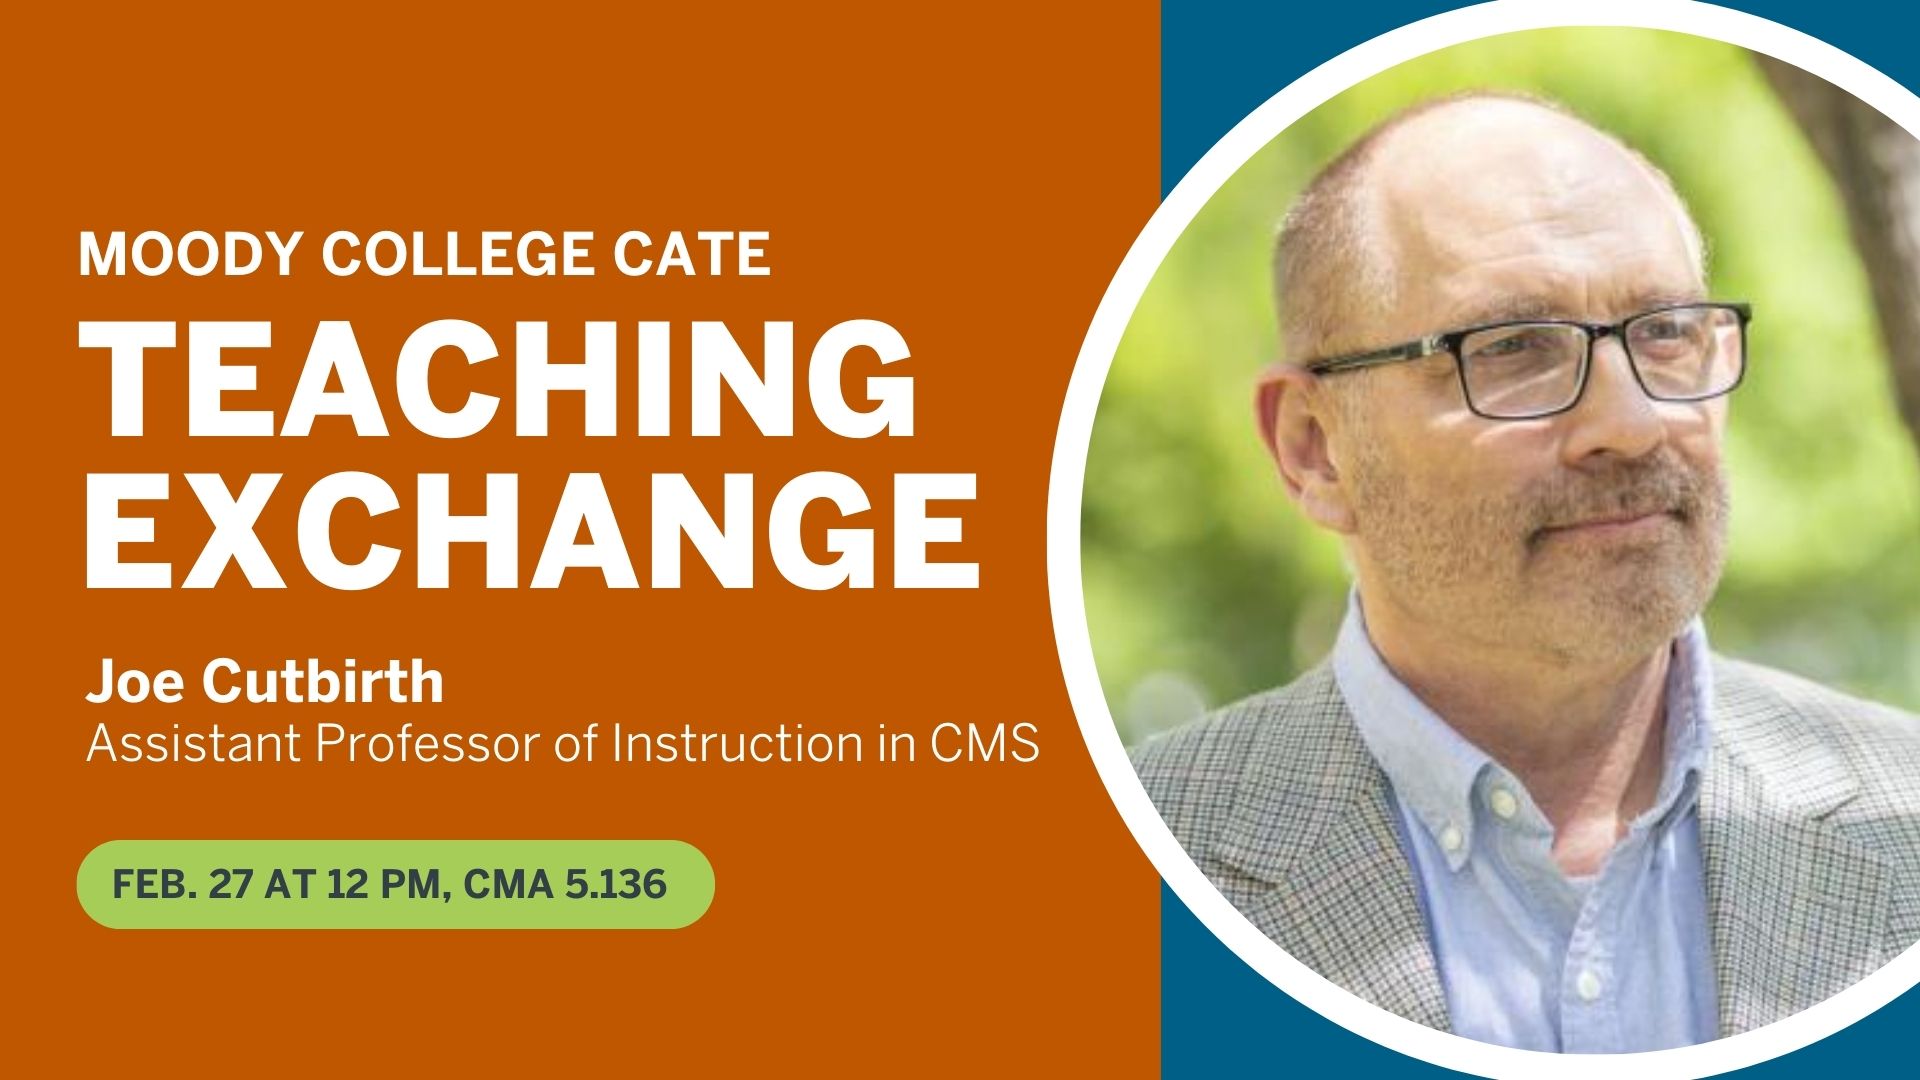 CATE Teaching Exchange - Joe Cutbirth. Feb. 27 at 12-12:45 p.m. in CMA 5.136.